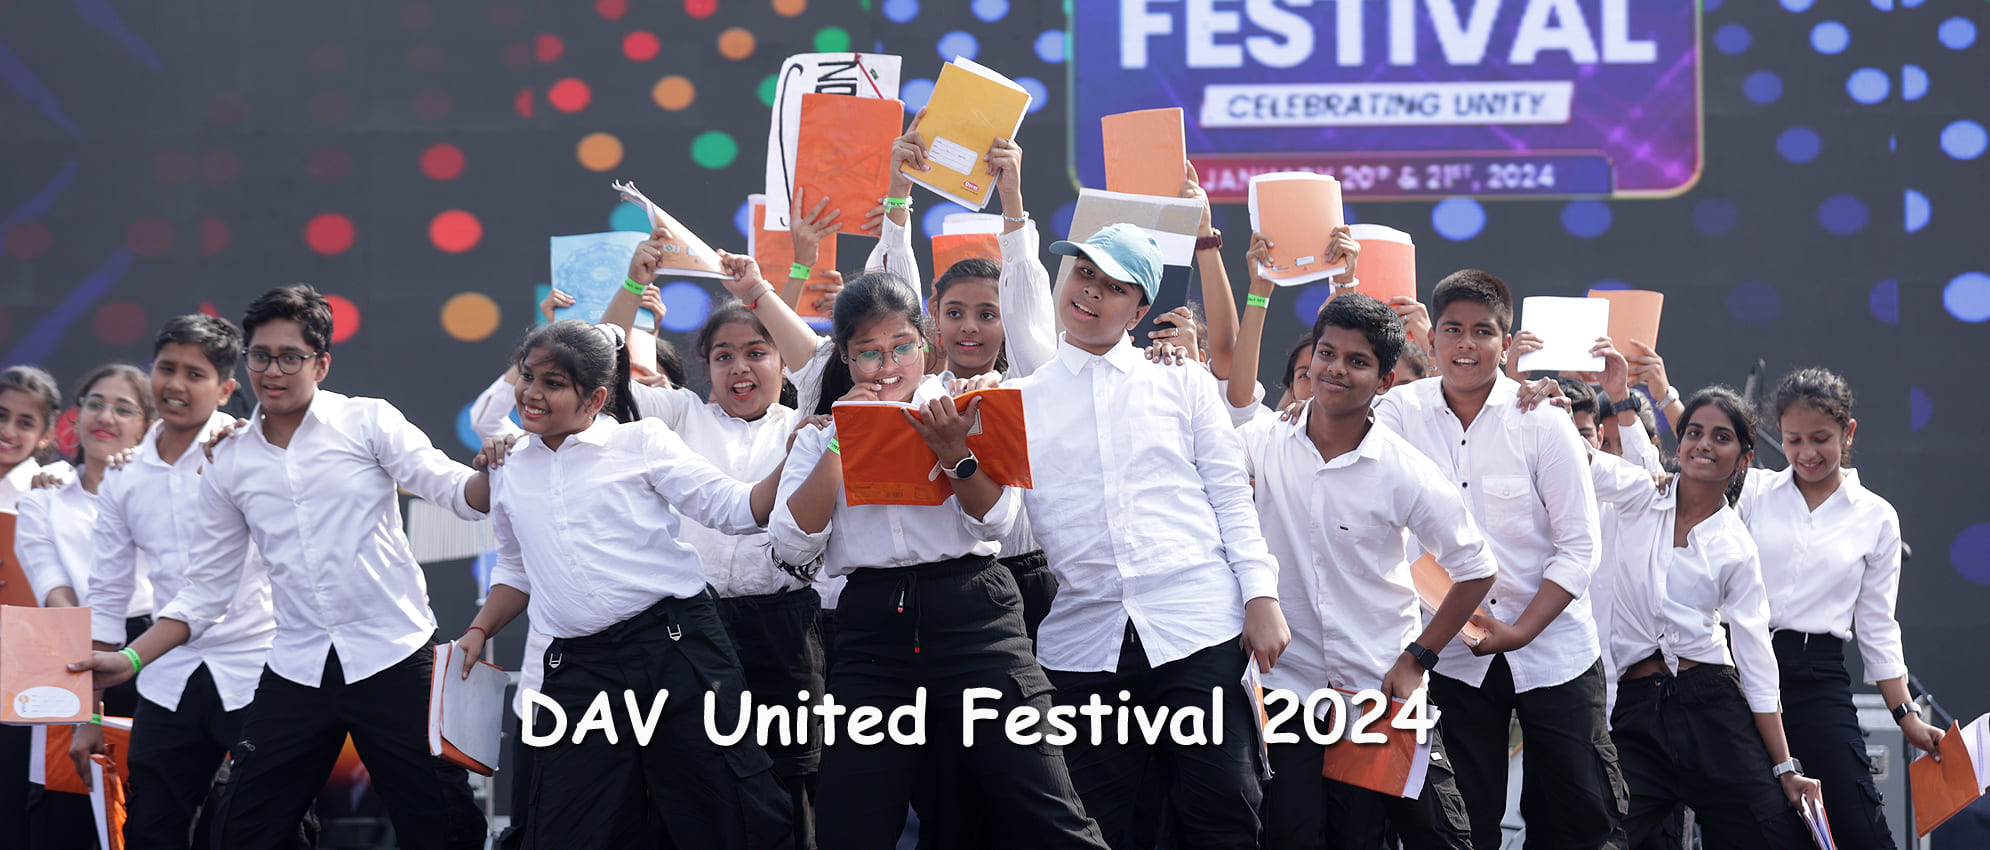 DAV United Festival 2024